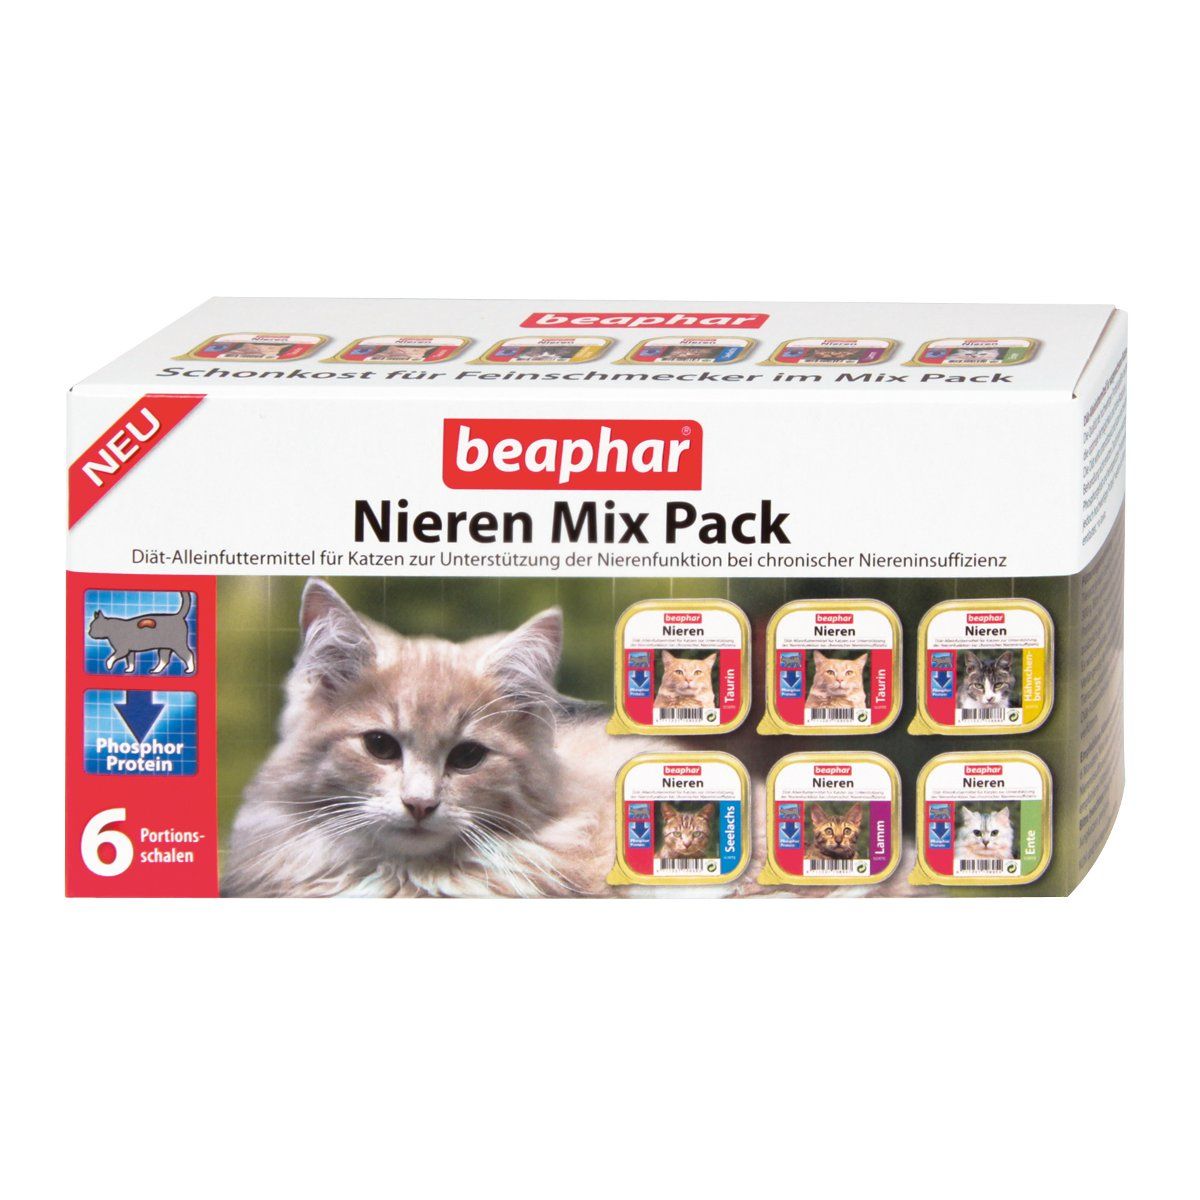 Beaphar - Nierendiät Mix Pack